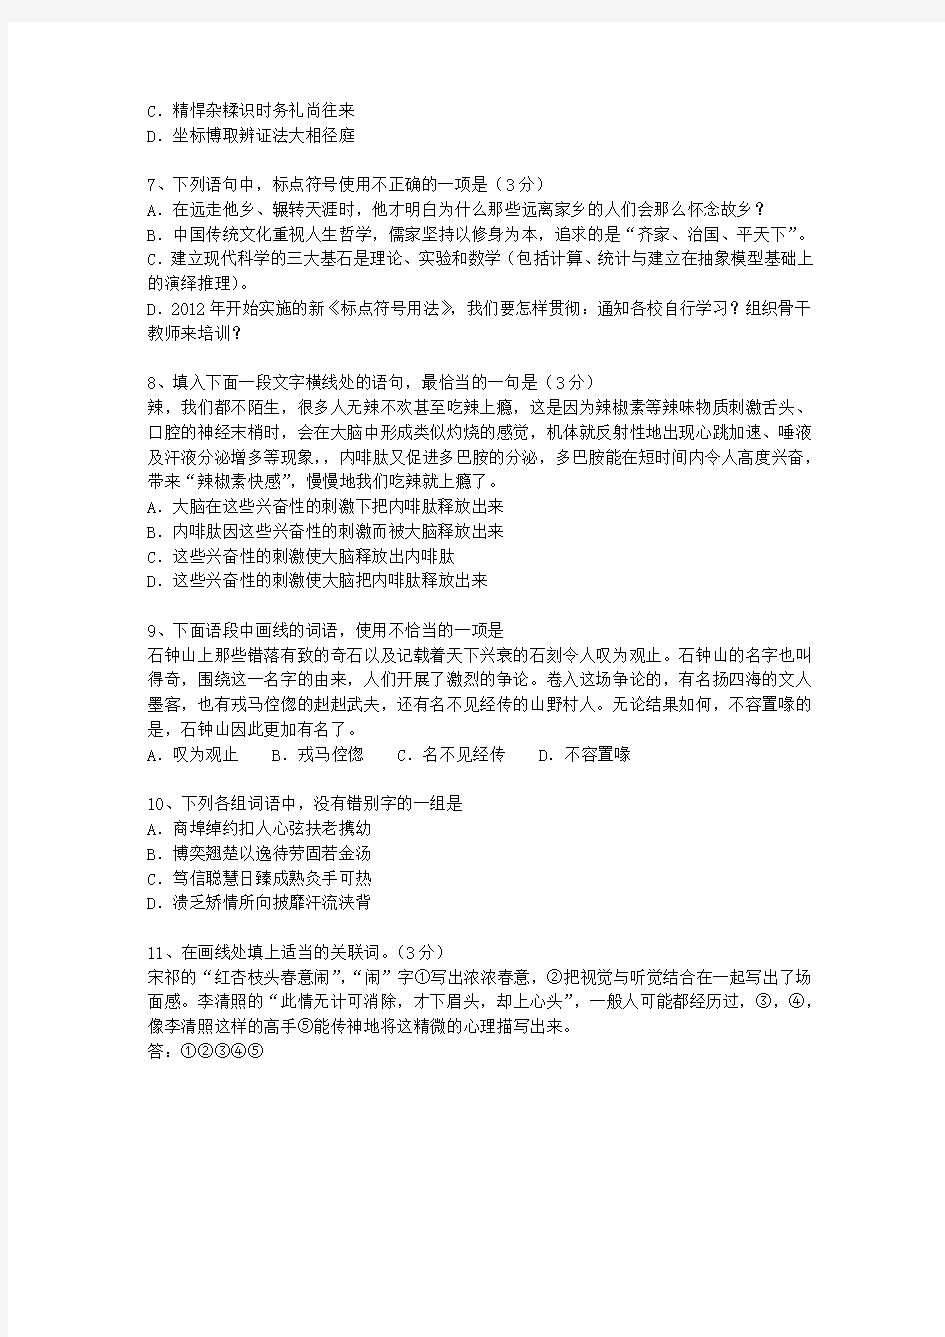 2010香港特别行政区高考语文试题及详细答案考试重点和考试技巧